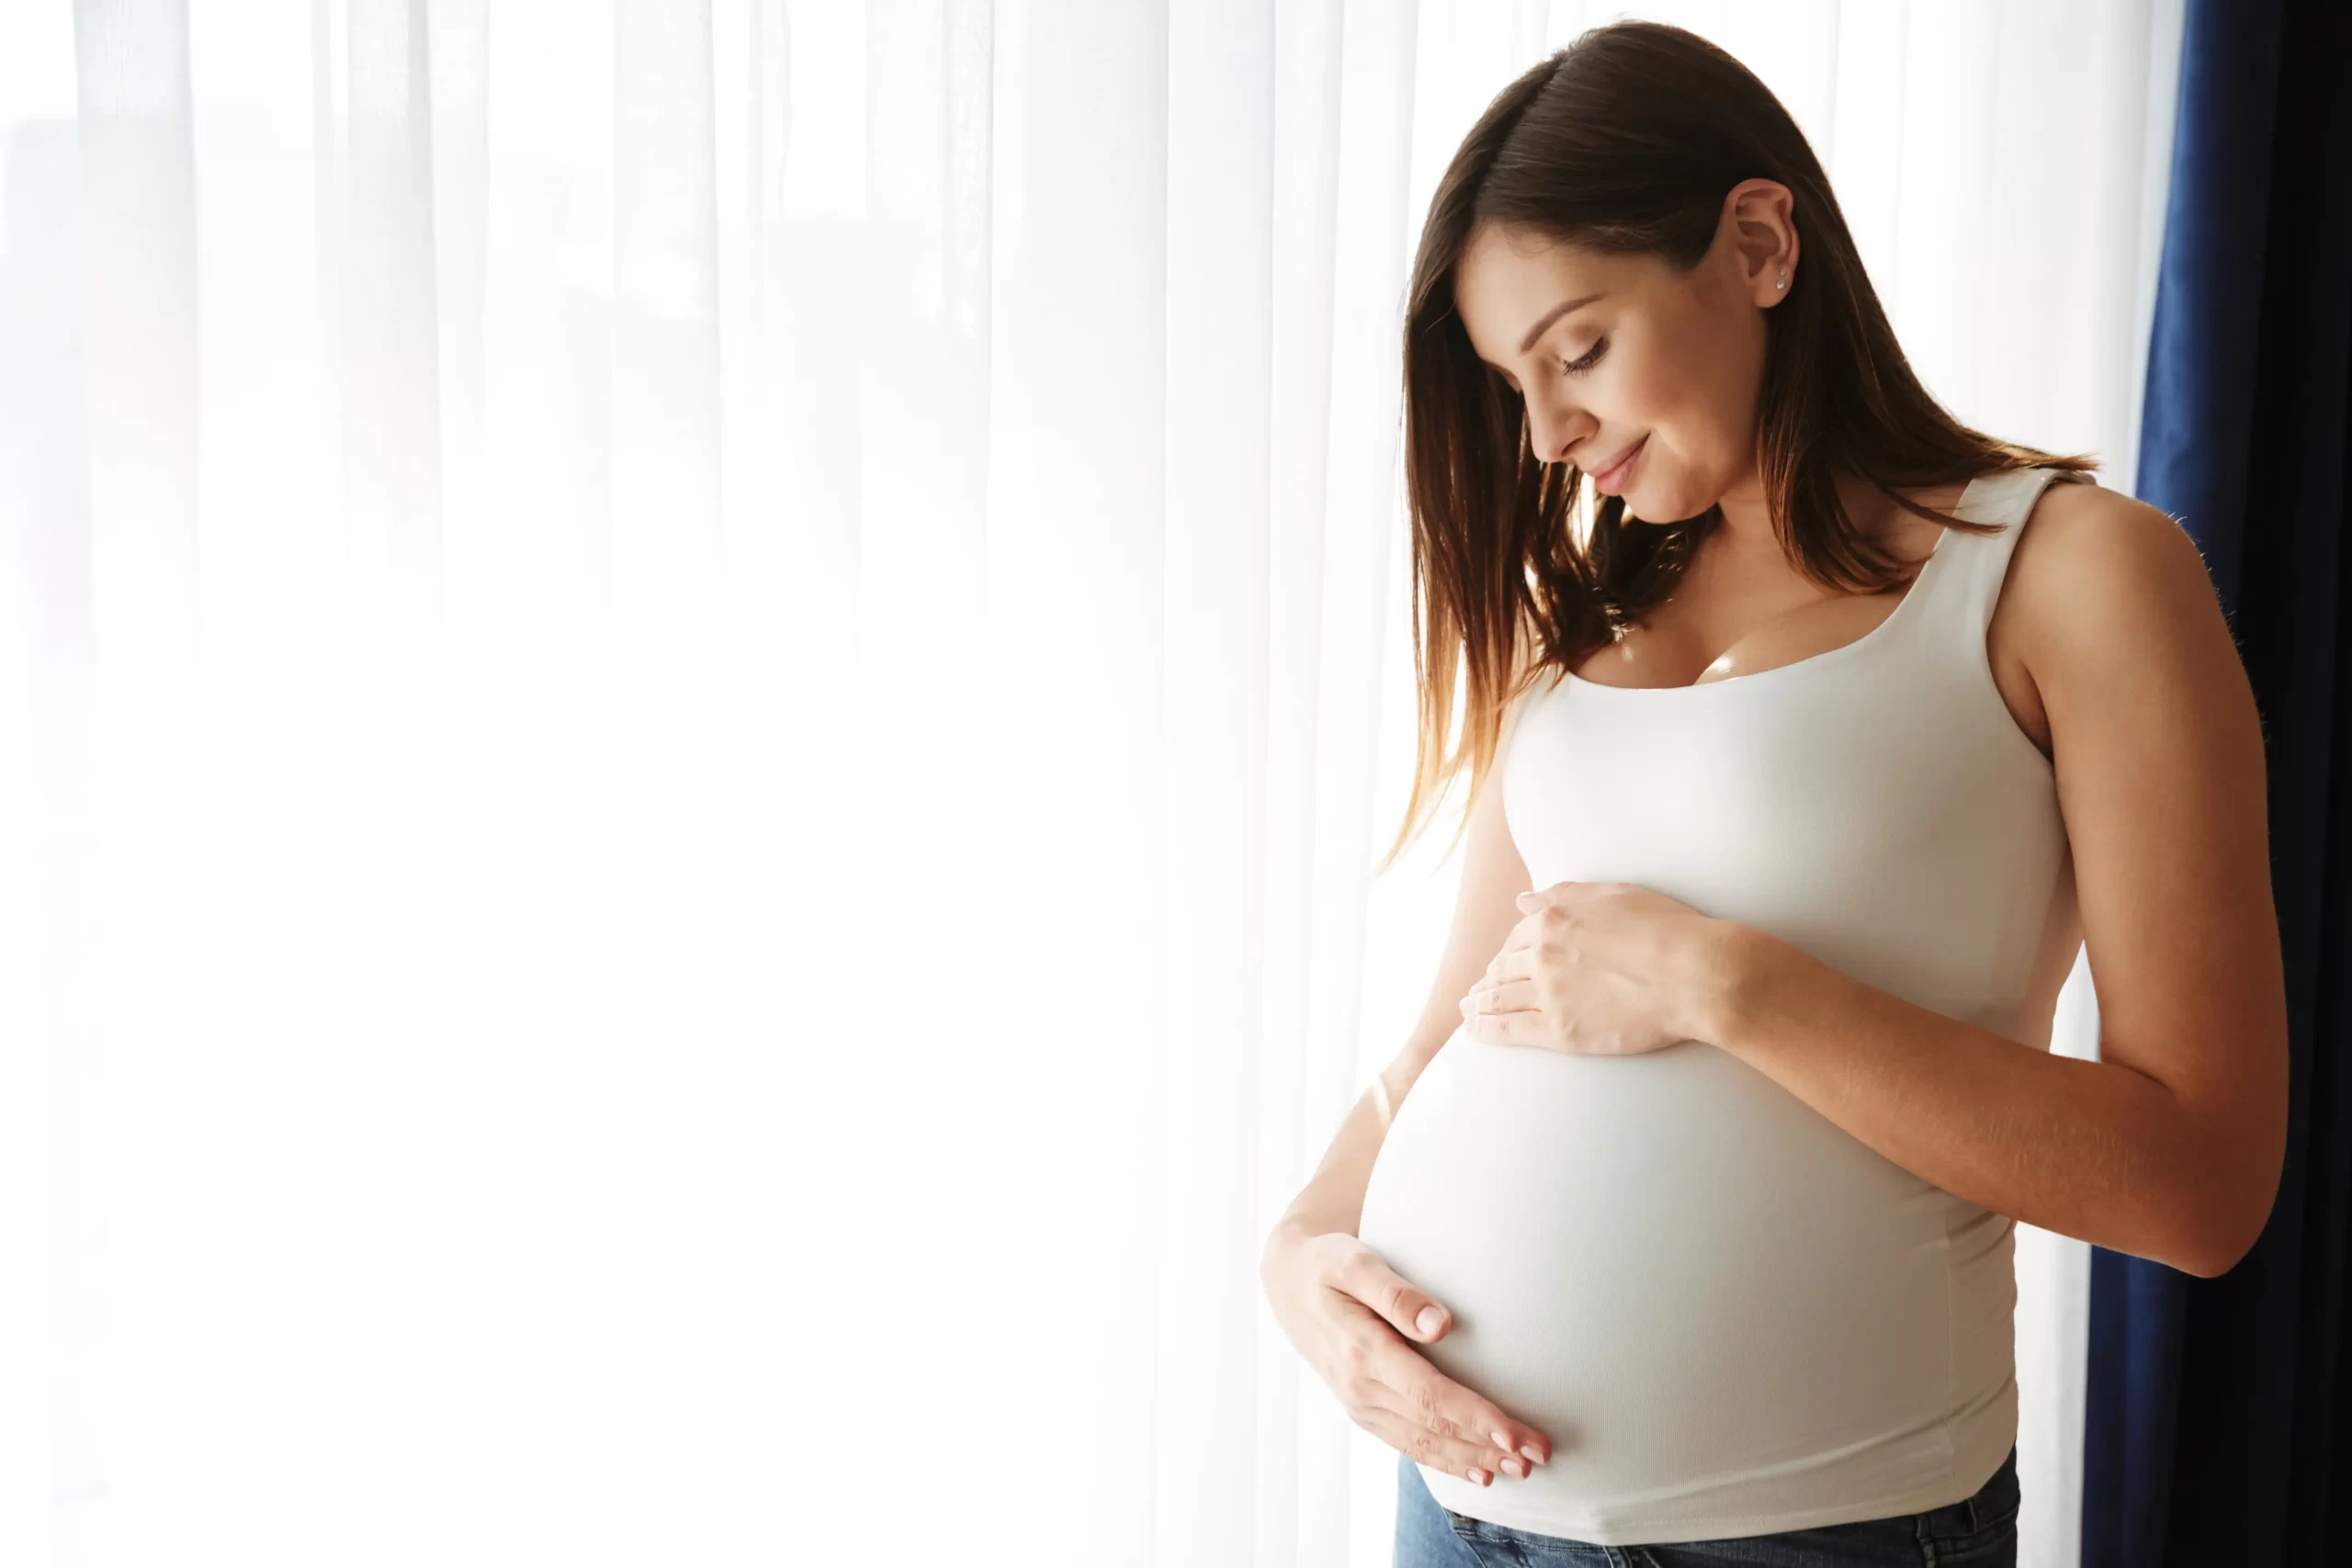 Ο προγεννητικός έλεγχος, συμπεριλαμβανομένων των προληπτικών και διαγνωστικών εξετάσεων, μπορεί να παράσχει πολύτιμες πληροφορίες για την υγεία του μωρού σας. Κατανοήστε τους κινδύνους και τα οφέλη. Η εγκυμοσύνη είναι μια περίοδος μεγάλης προσμονής - και, μερικές φορές, άγχους. Μπορεί να ανησυχείτε ότι το μωρό σας θα έχει προβλήματα υγείας. Ενώ τα περισσότερα μωρά γεννιούνται υγιή, είναι σημαντικό να κατανοήσετε τις επιλογές σας για να λάβετε λεπτομέρειες σχετικά με την υγεία του μωρού σας.